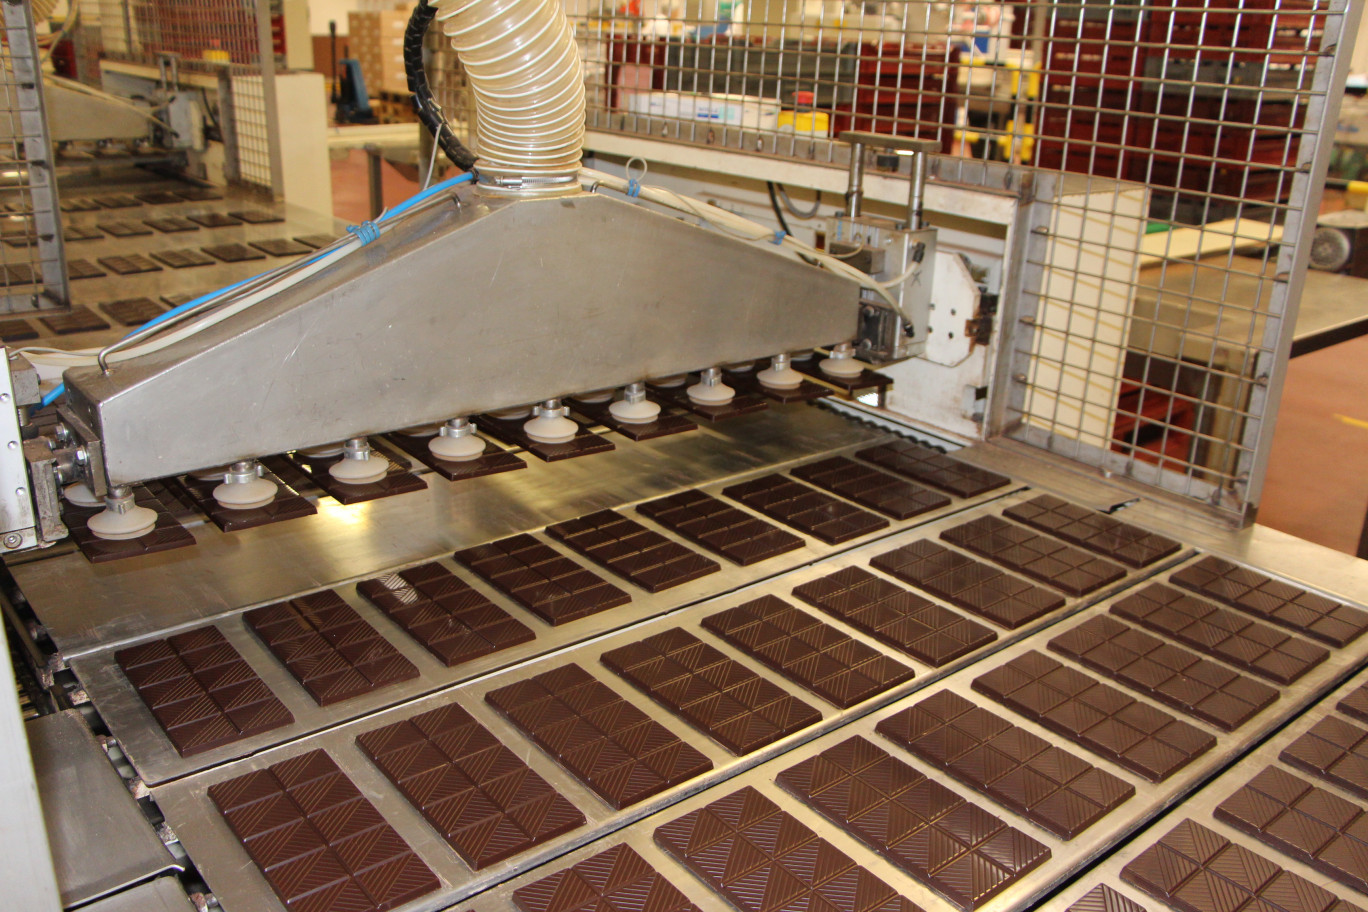 La chocolaterie installée à Bourbourg appartient au groupe français Cémoi. L'entreprise a mis en place deux programmes scientifiques de recherche fondamentale, l'une sur les arômes et l'impact des terroirs, l'autre relatif aux millésimes sur l'aromatique du cacao.